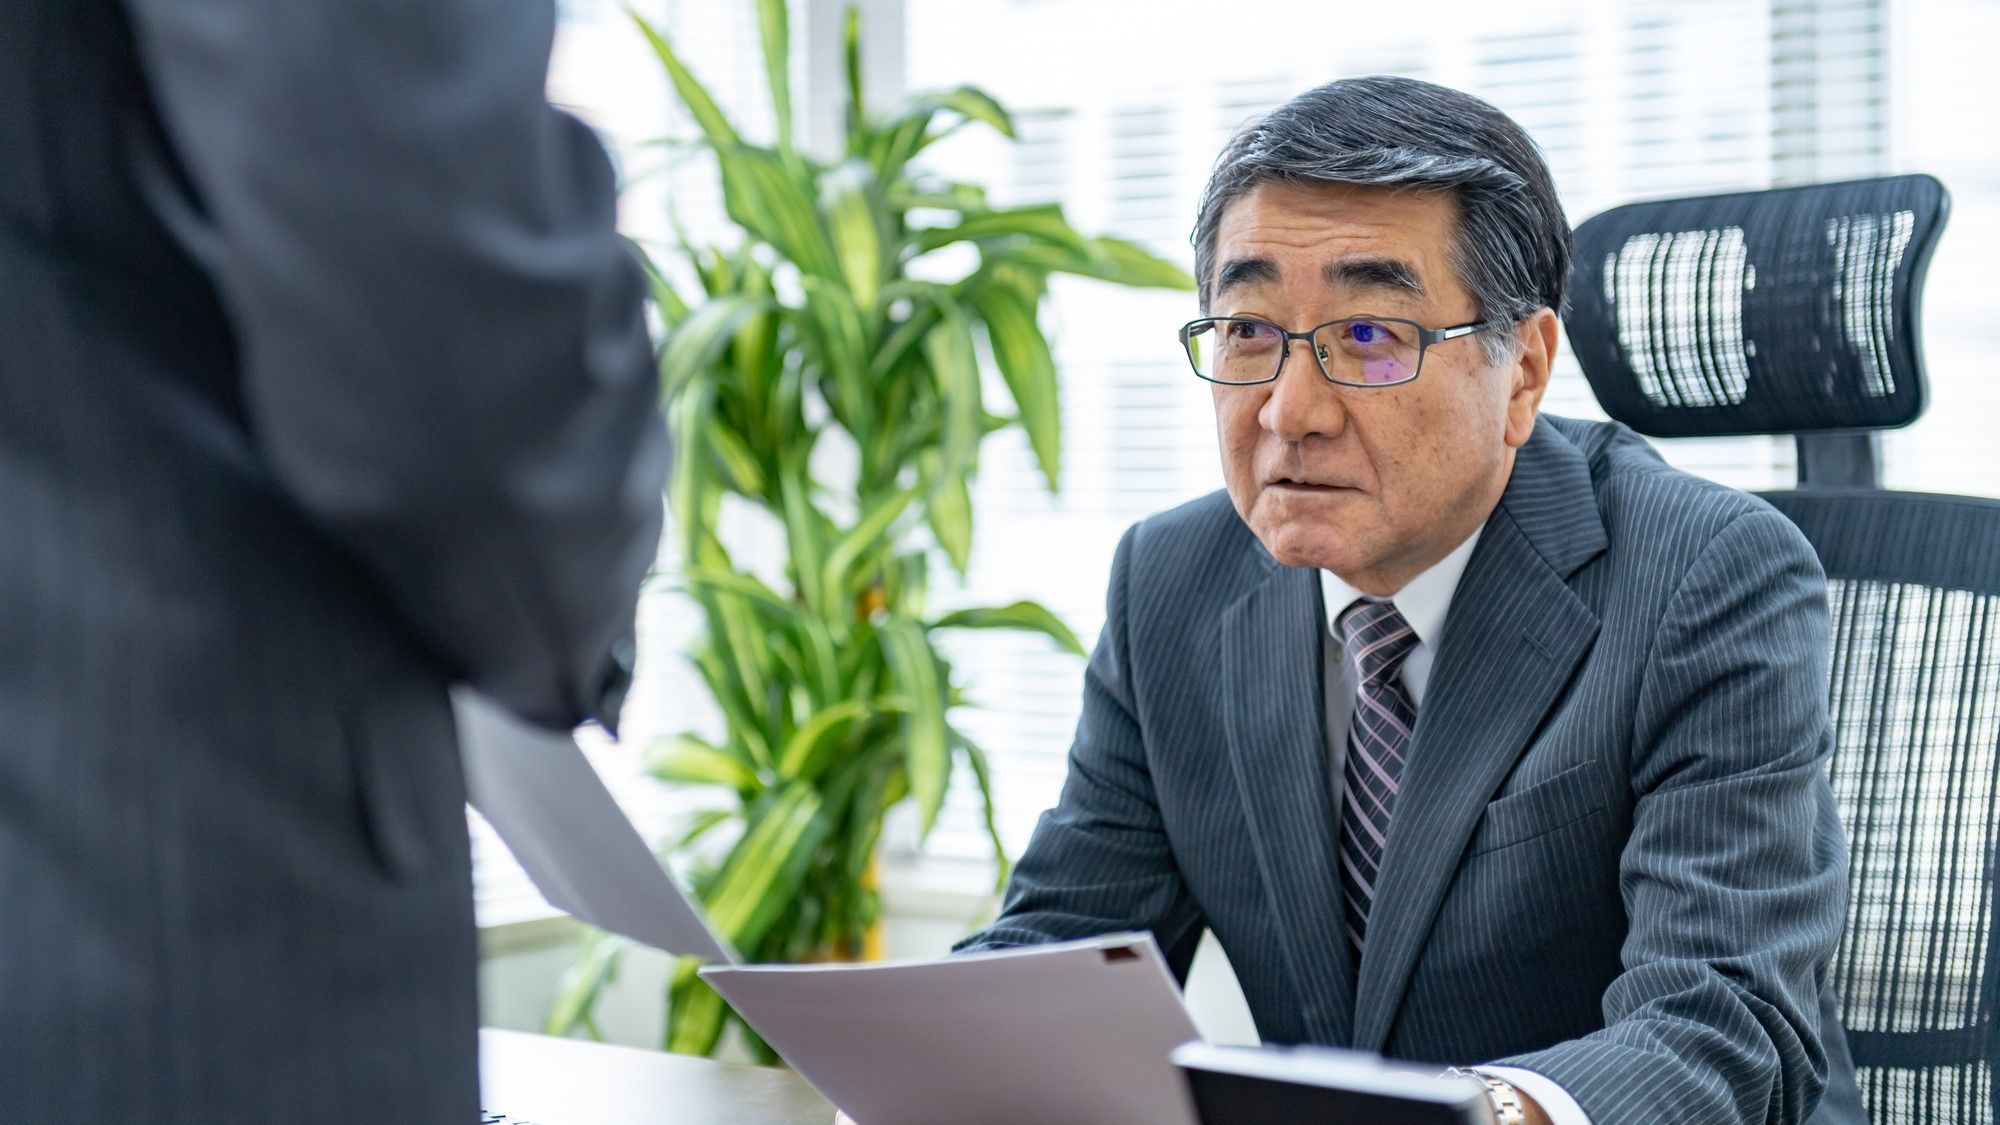 日本企業で｢管理職｣が名誉職になっている大問題 本来の仕事が果たせない原因にもなっている